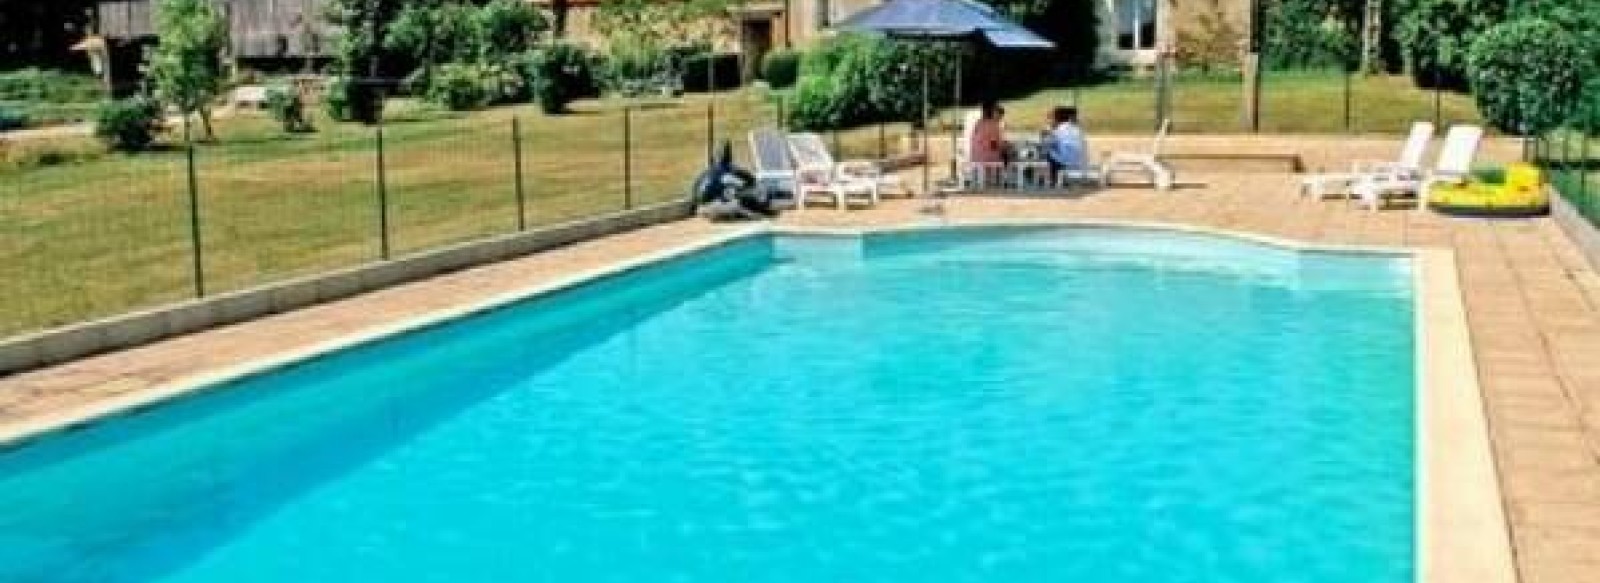 La Petite Loge pour 8 personnes avec piscine privee dans le sud Vendee